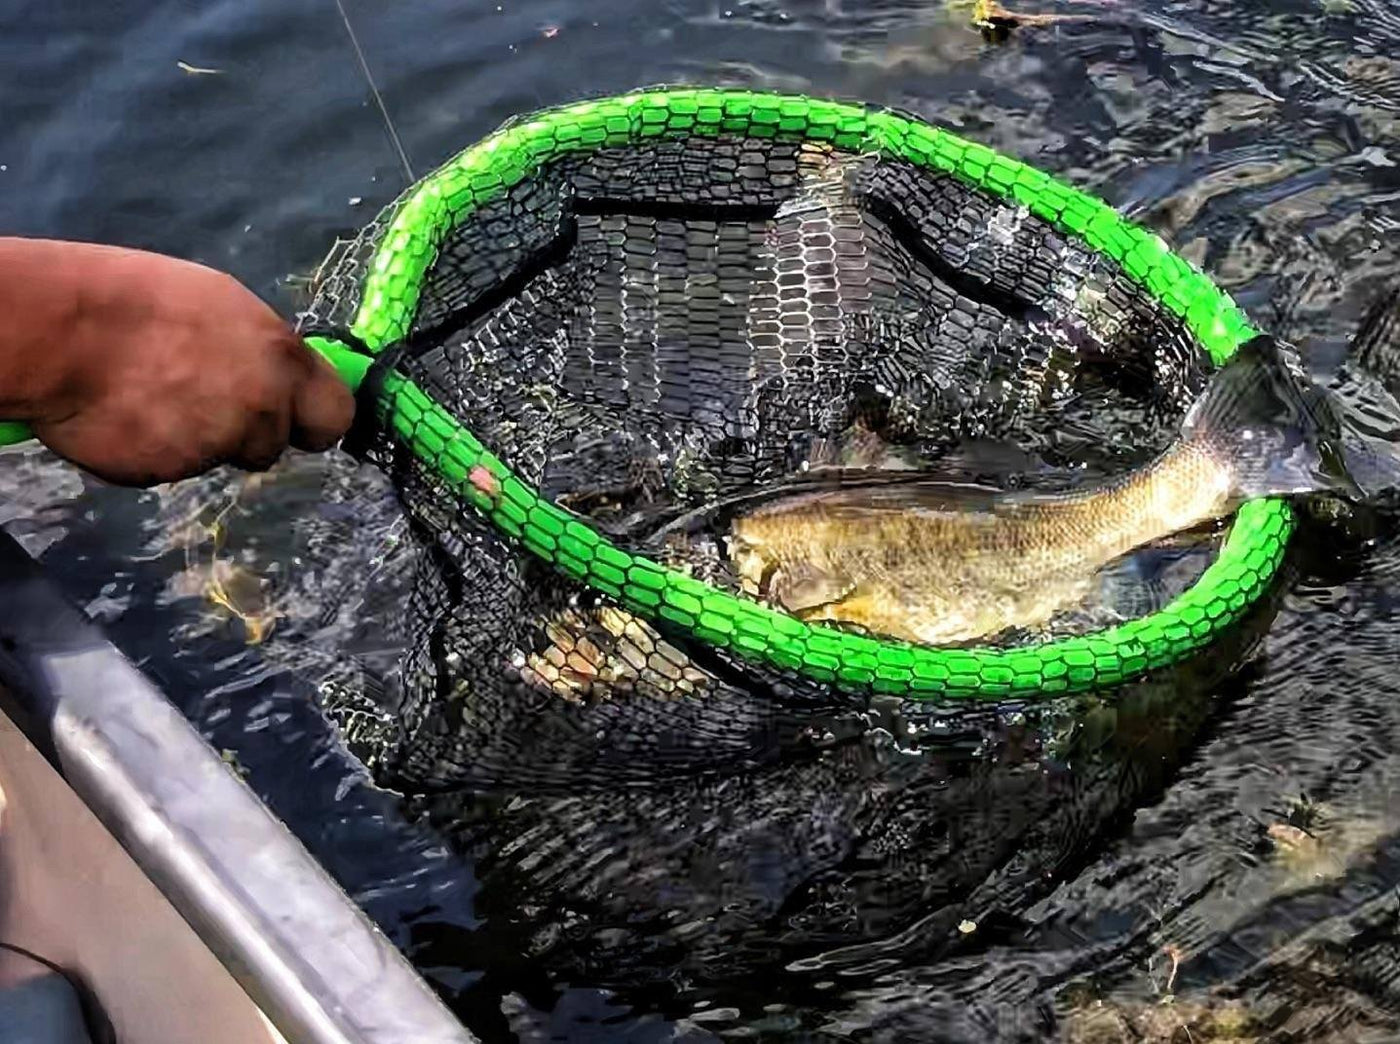 Pro Fish Gear Lunker Snatcher Floating Net